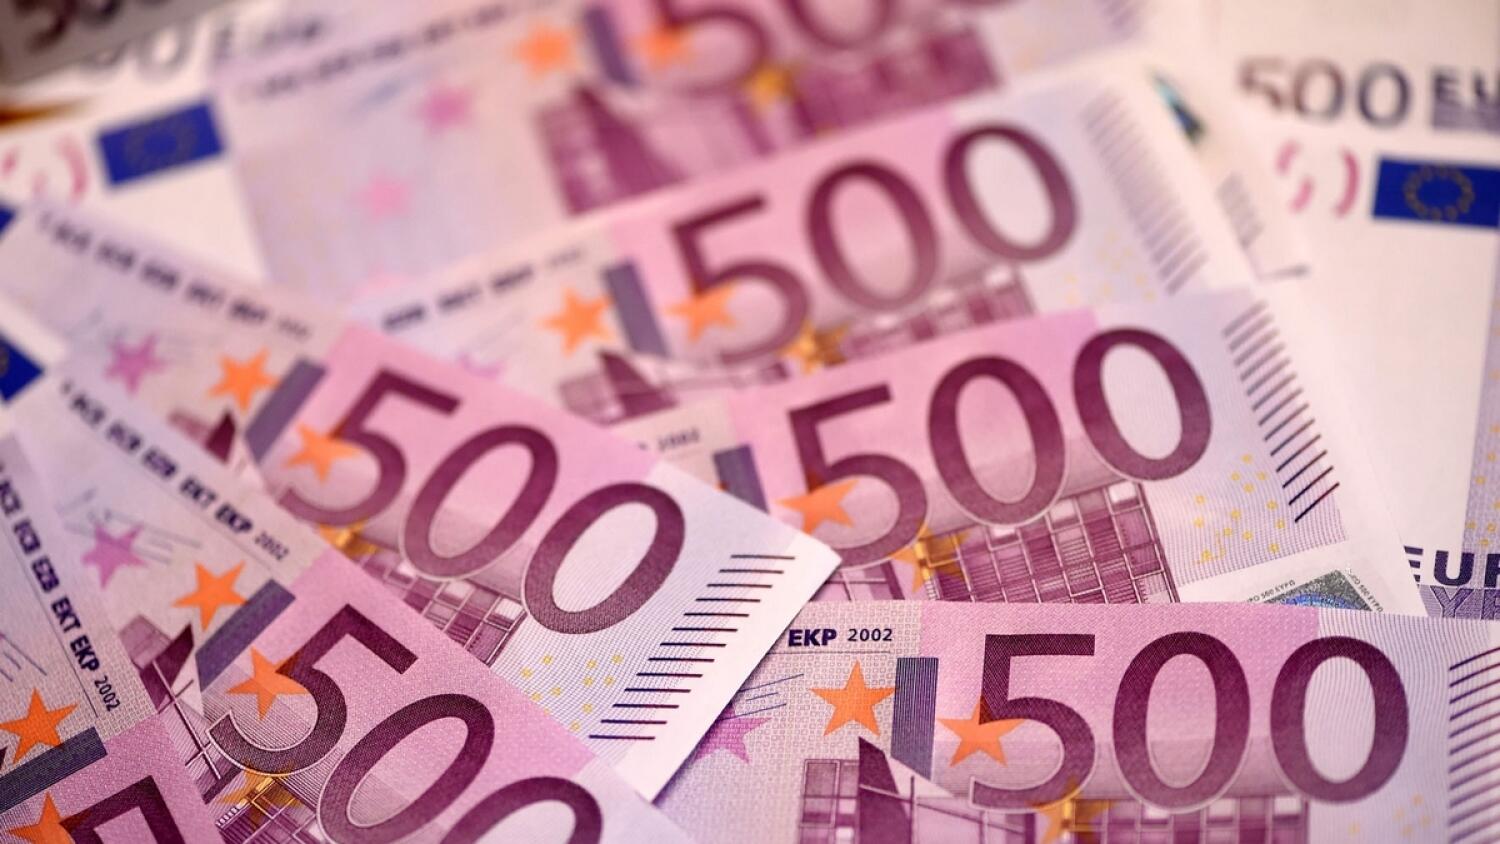 500 евро купюра принимают. Купюра 500 евро. Банкноты евро 500. 500 Евро купюра 2002. Евро картинки.